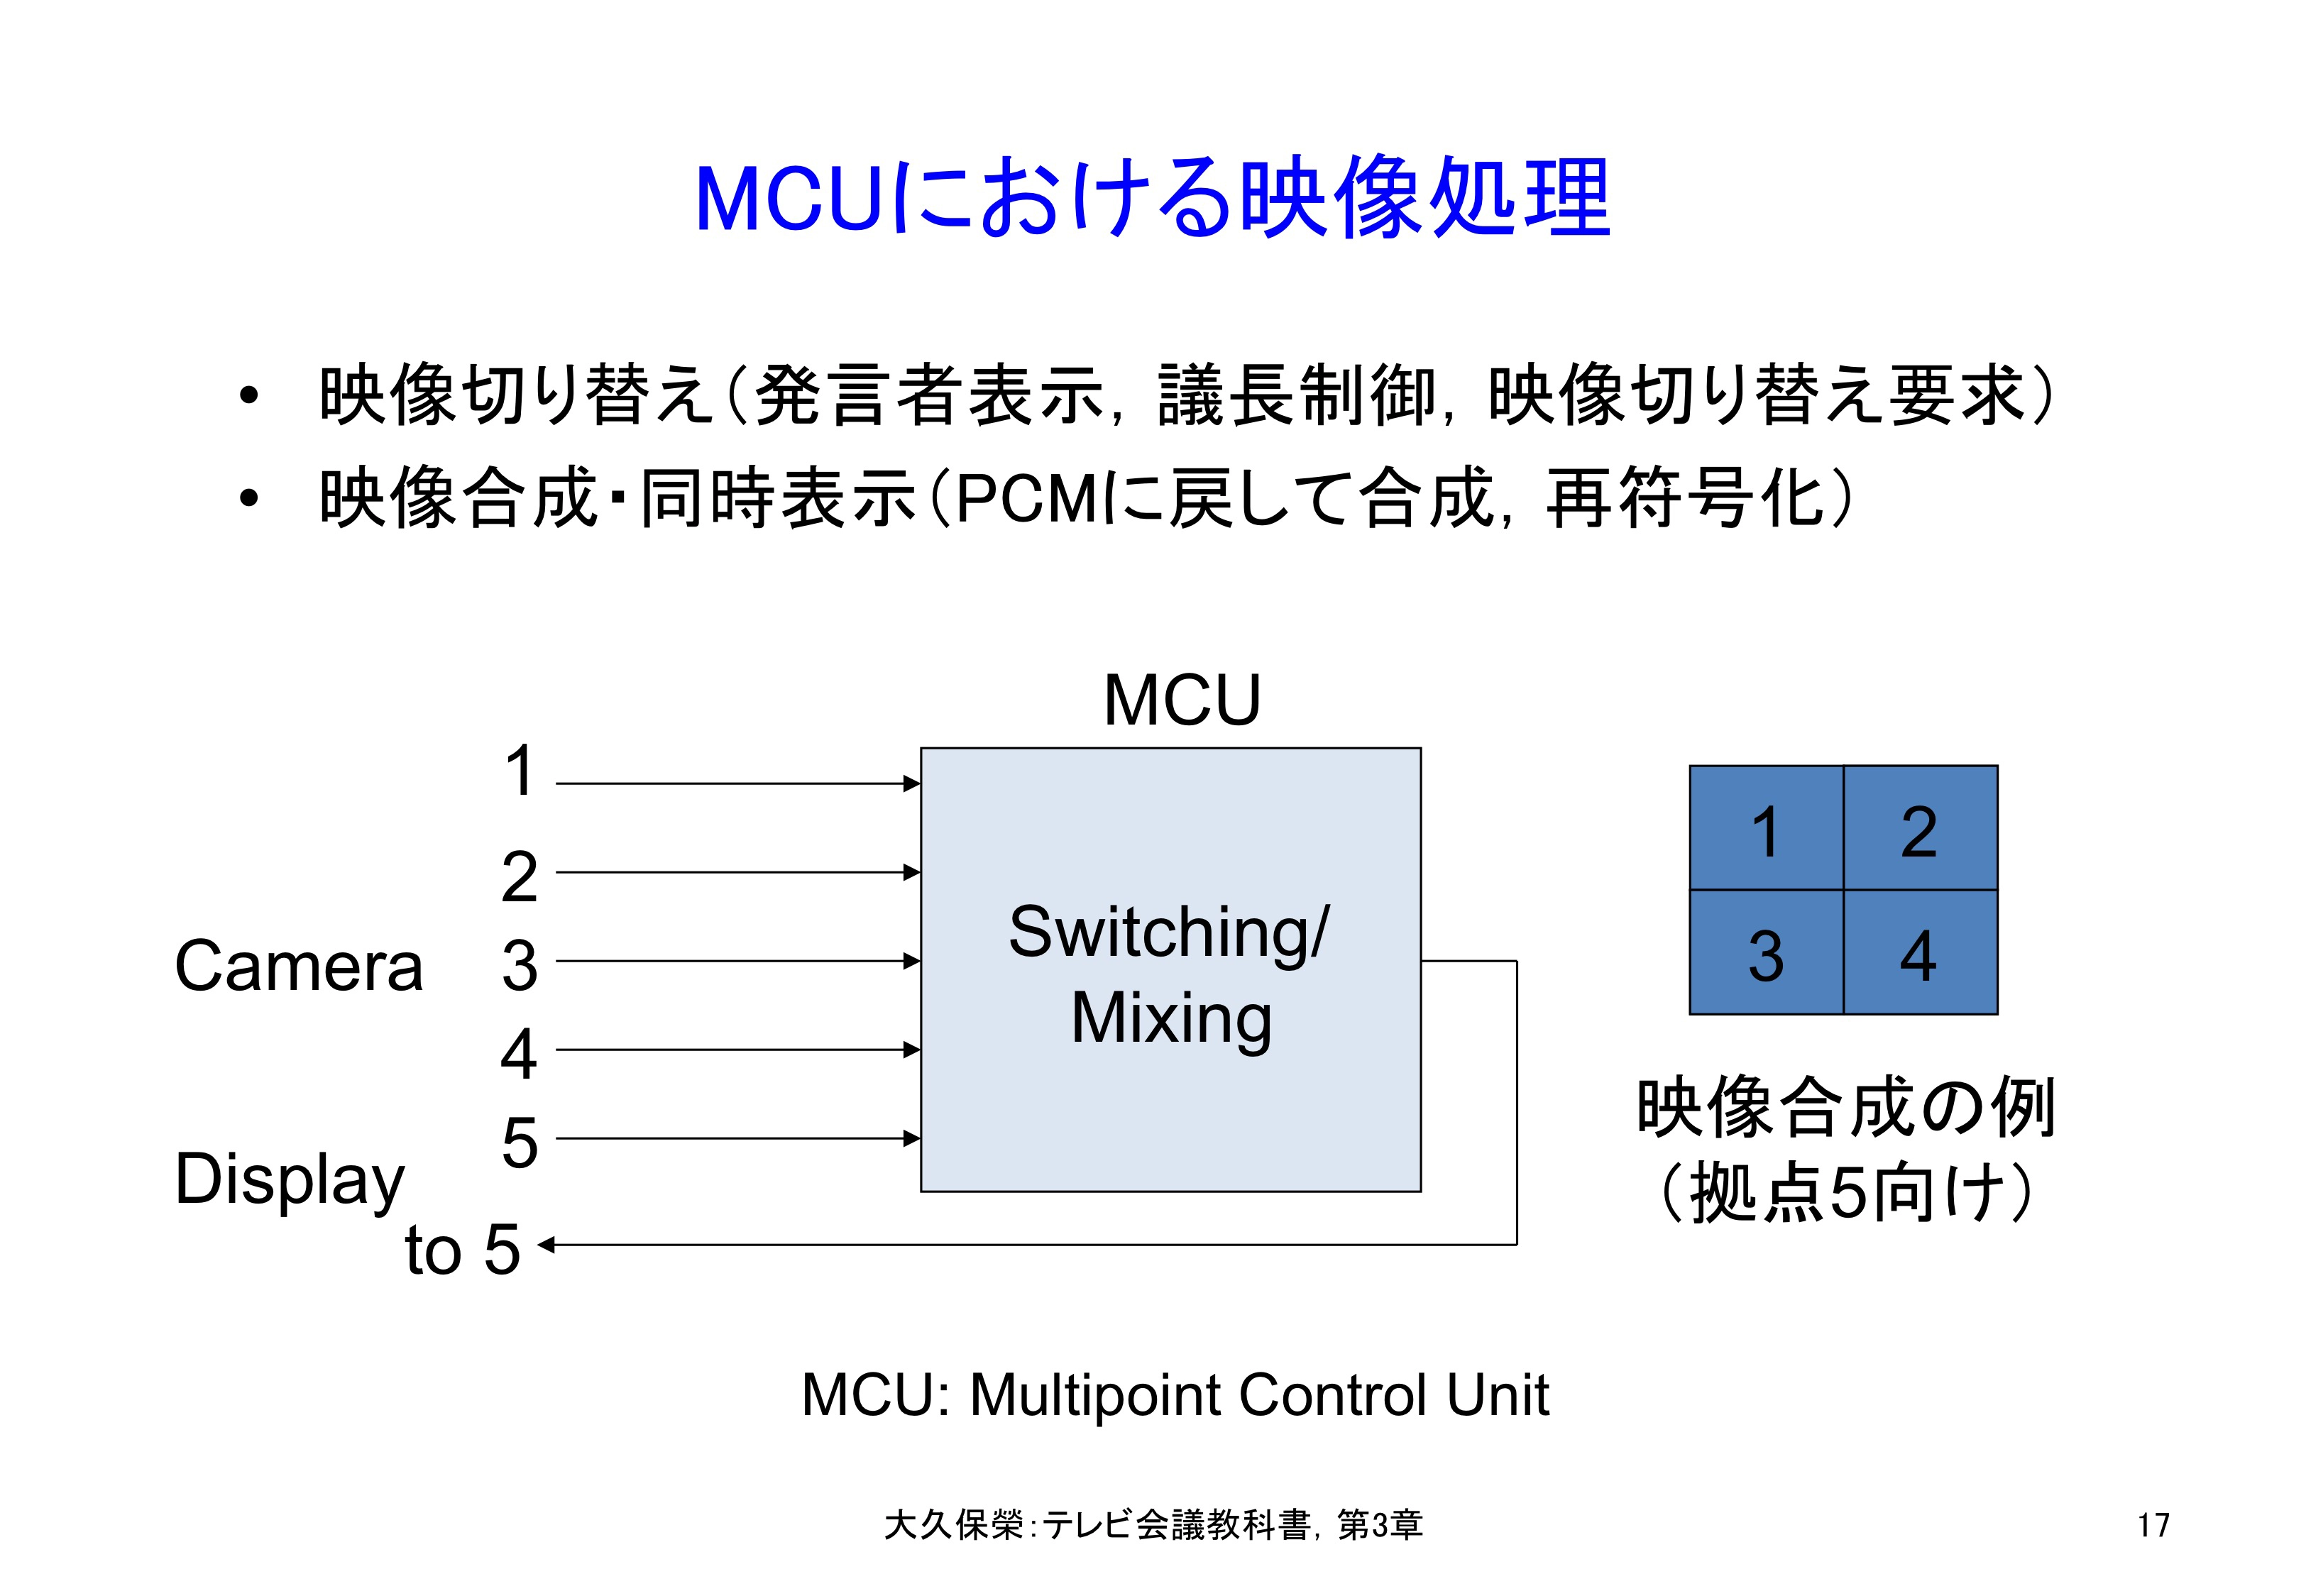 図3-17 MCUにおける映像処理